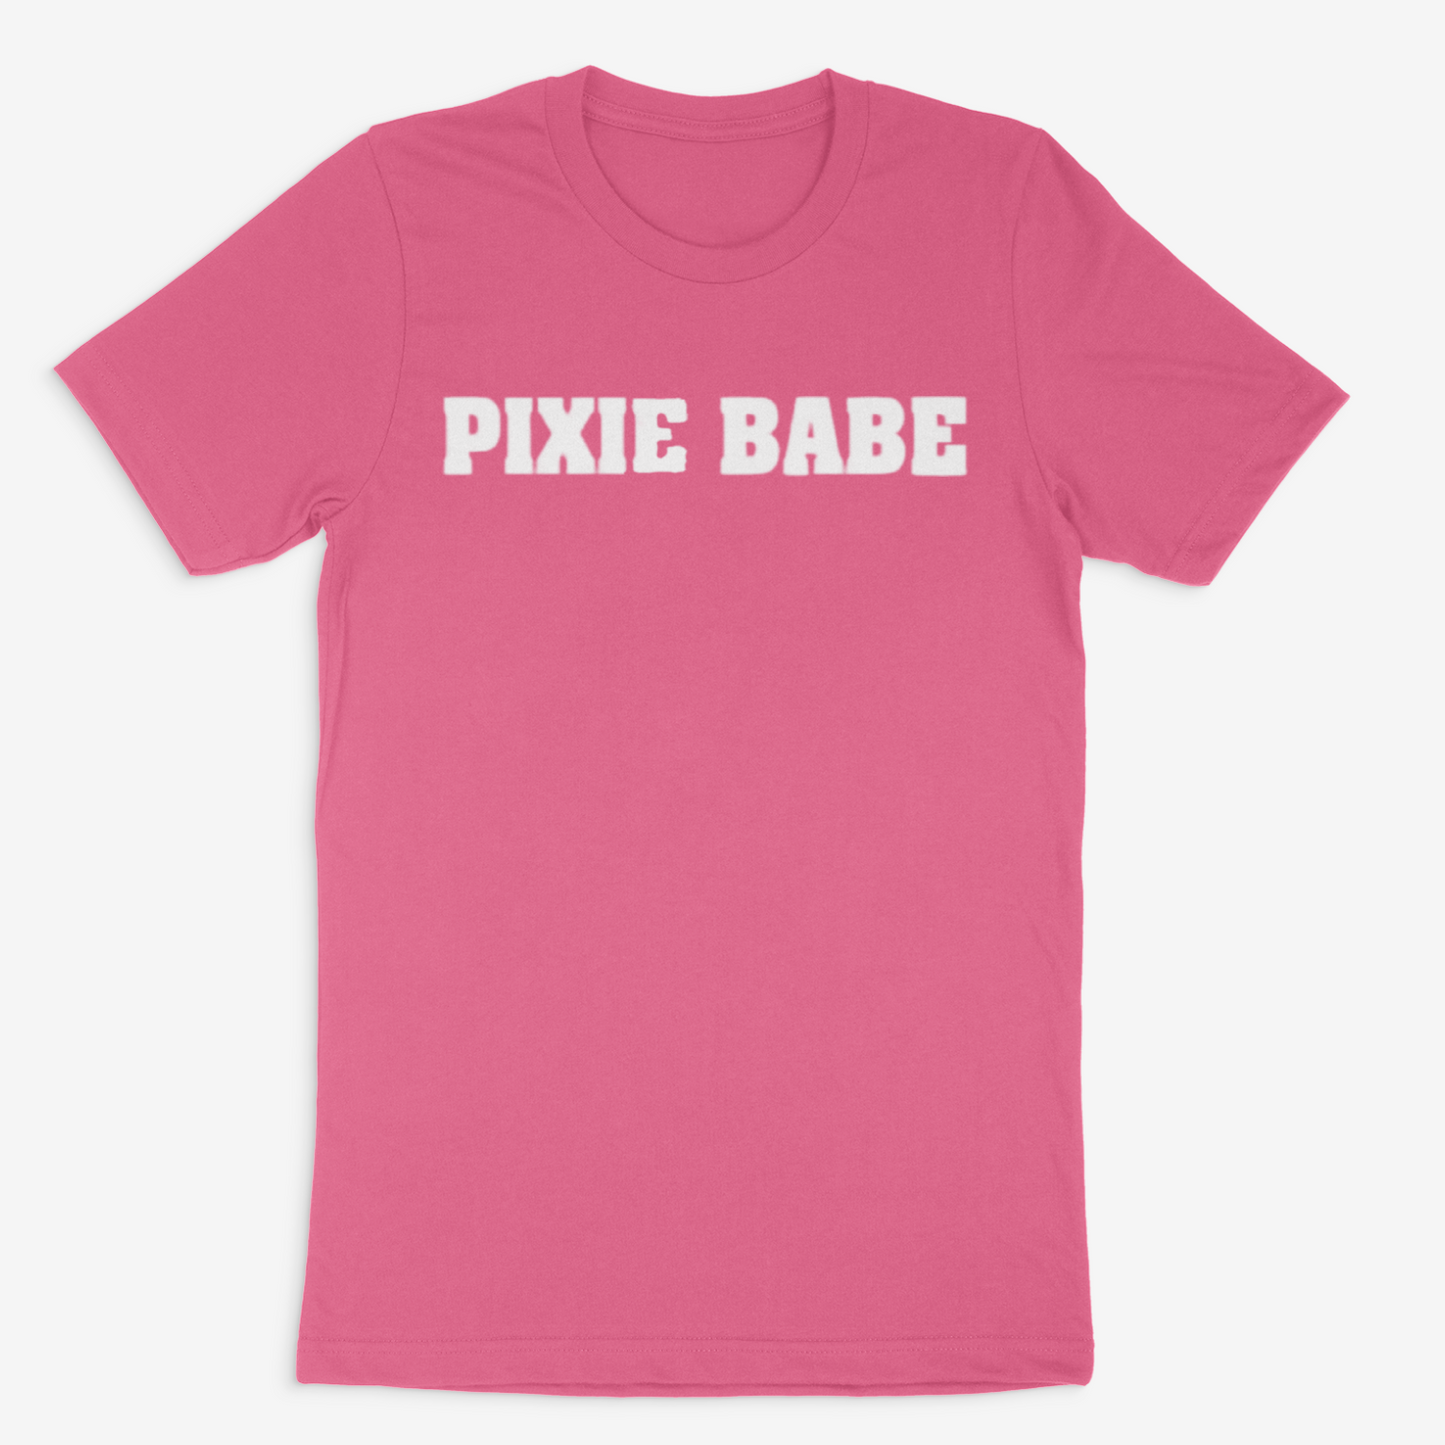 Pixie Babe Tee (White)